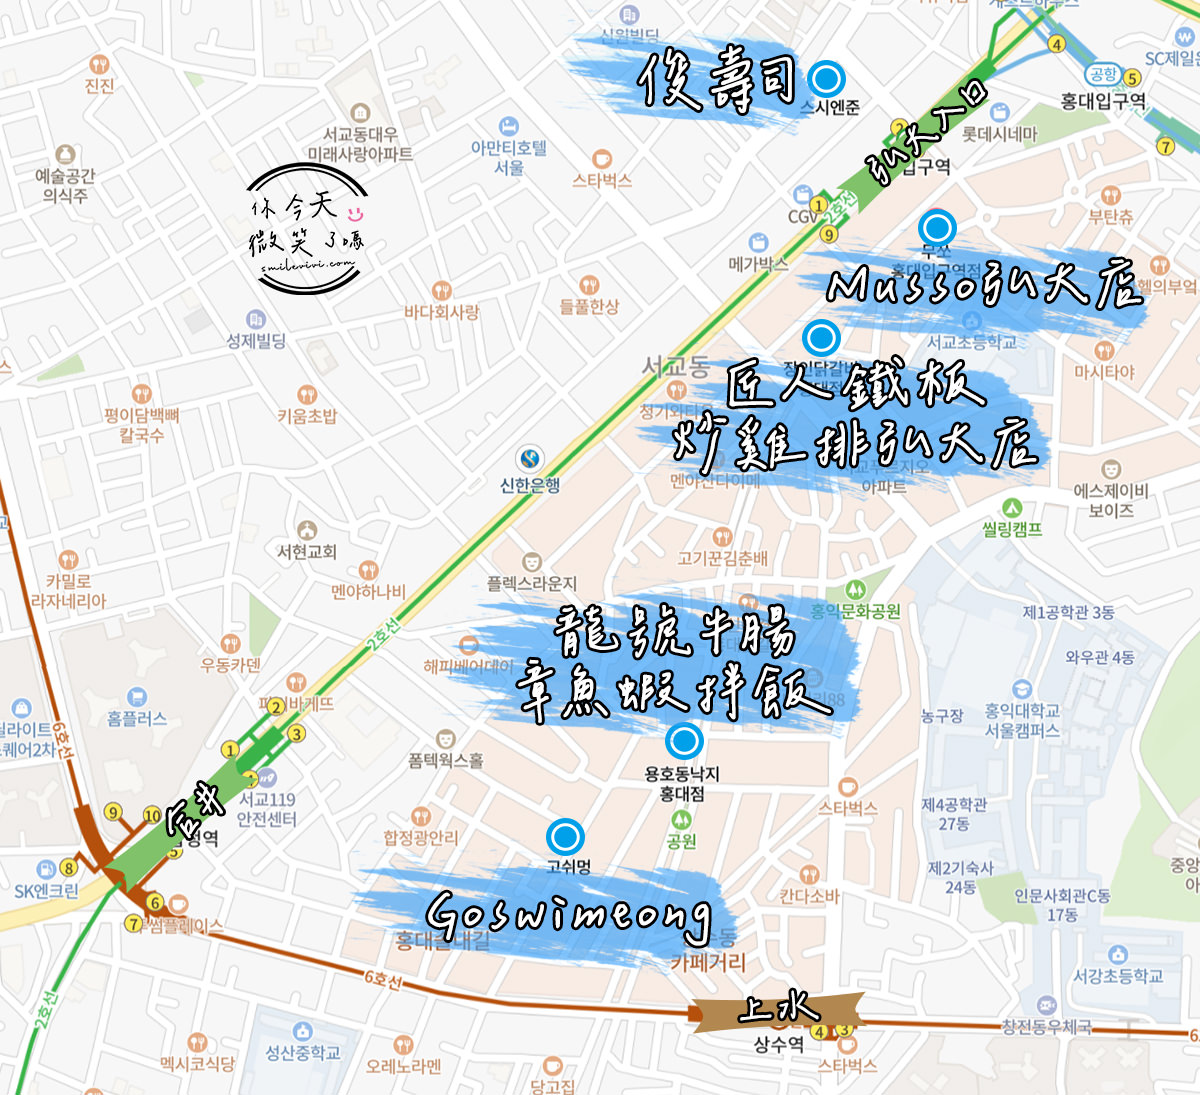 首爾∥5 間弘大美食懶人包∣必吃餐廳∣必吃美食推薦∣弘大美食推薦∣弘大餐廳 1 hongdae restaurant map